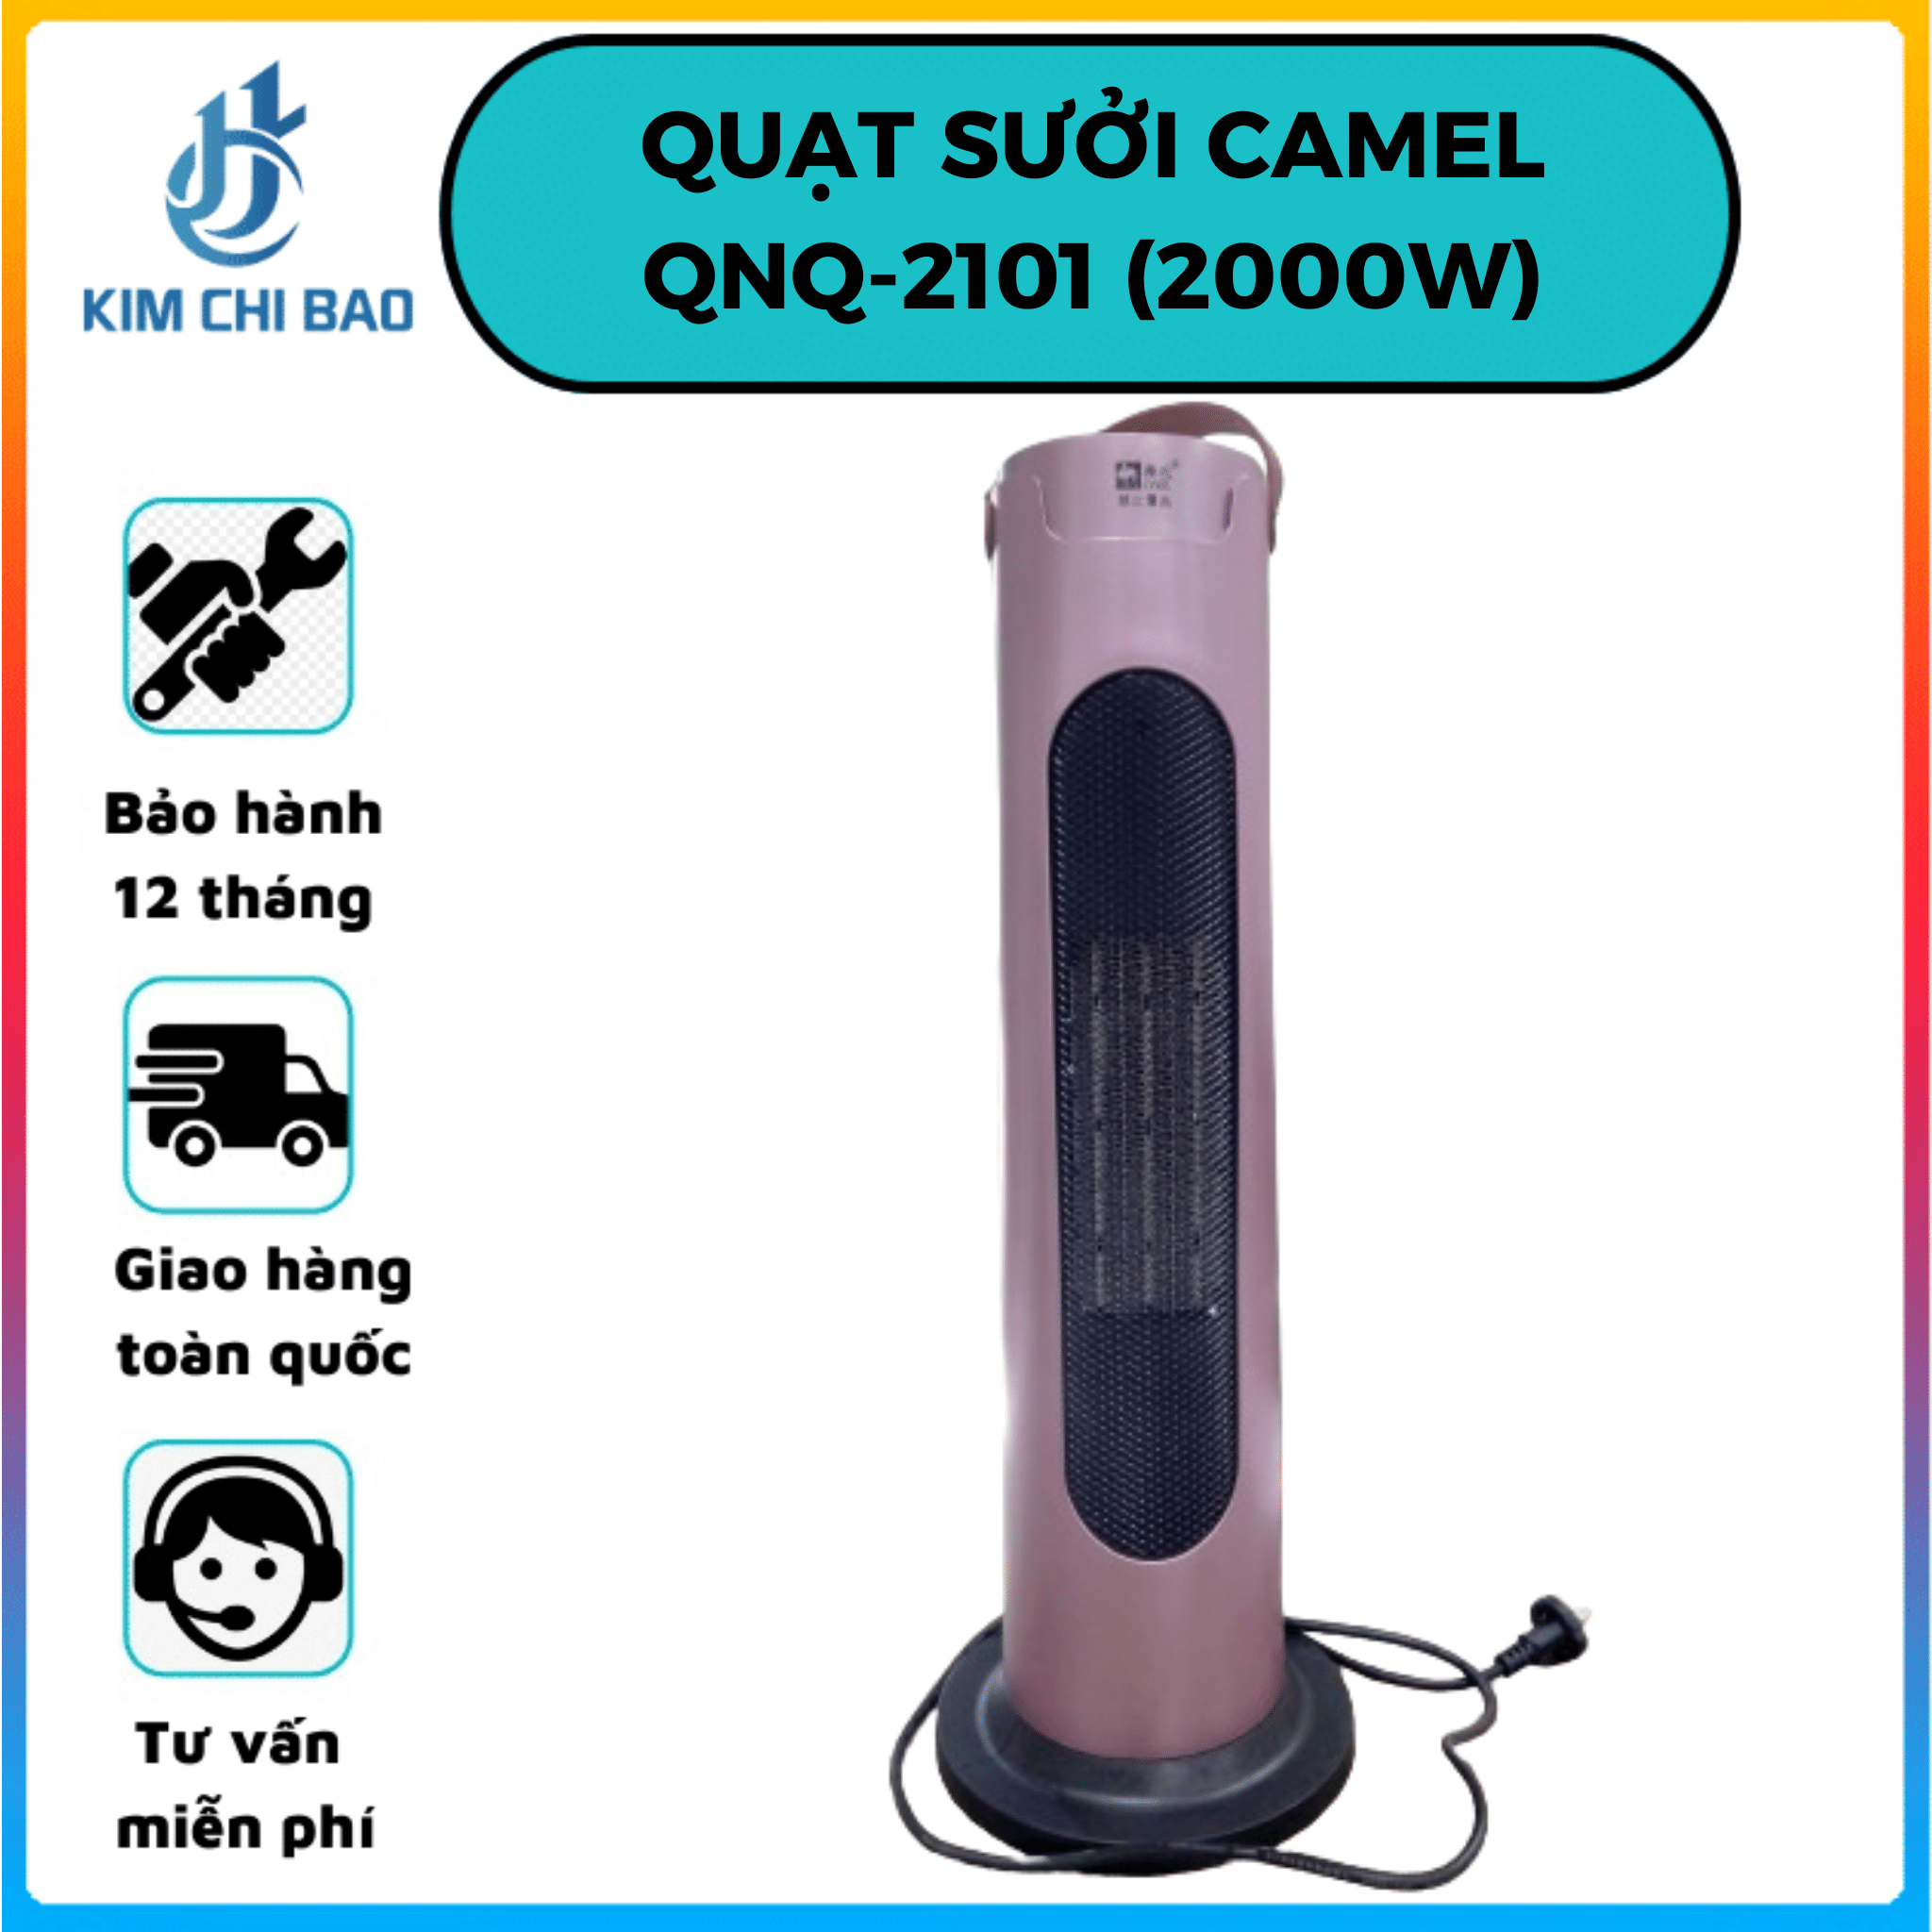 Quạt sưởi gốm Camel QNQ - 2101 (2000W)